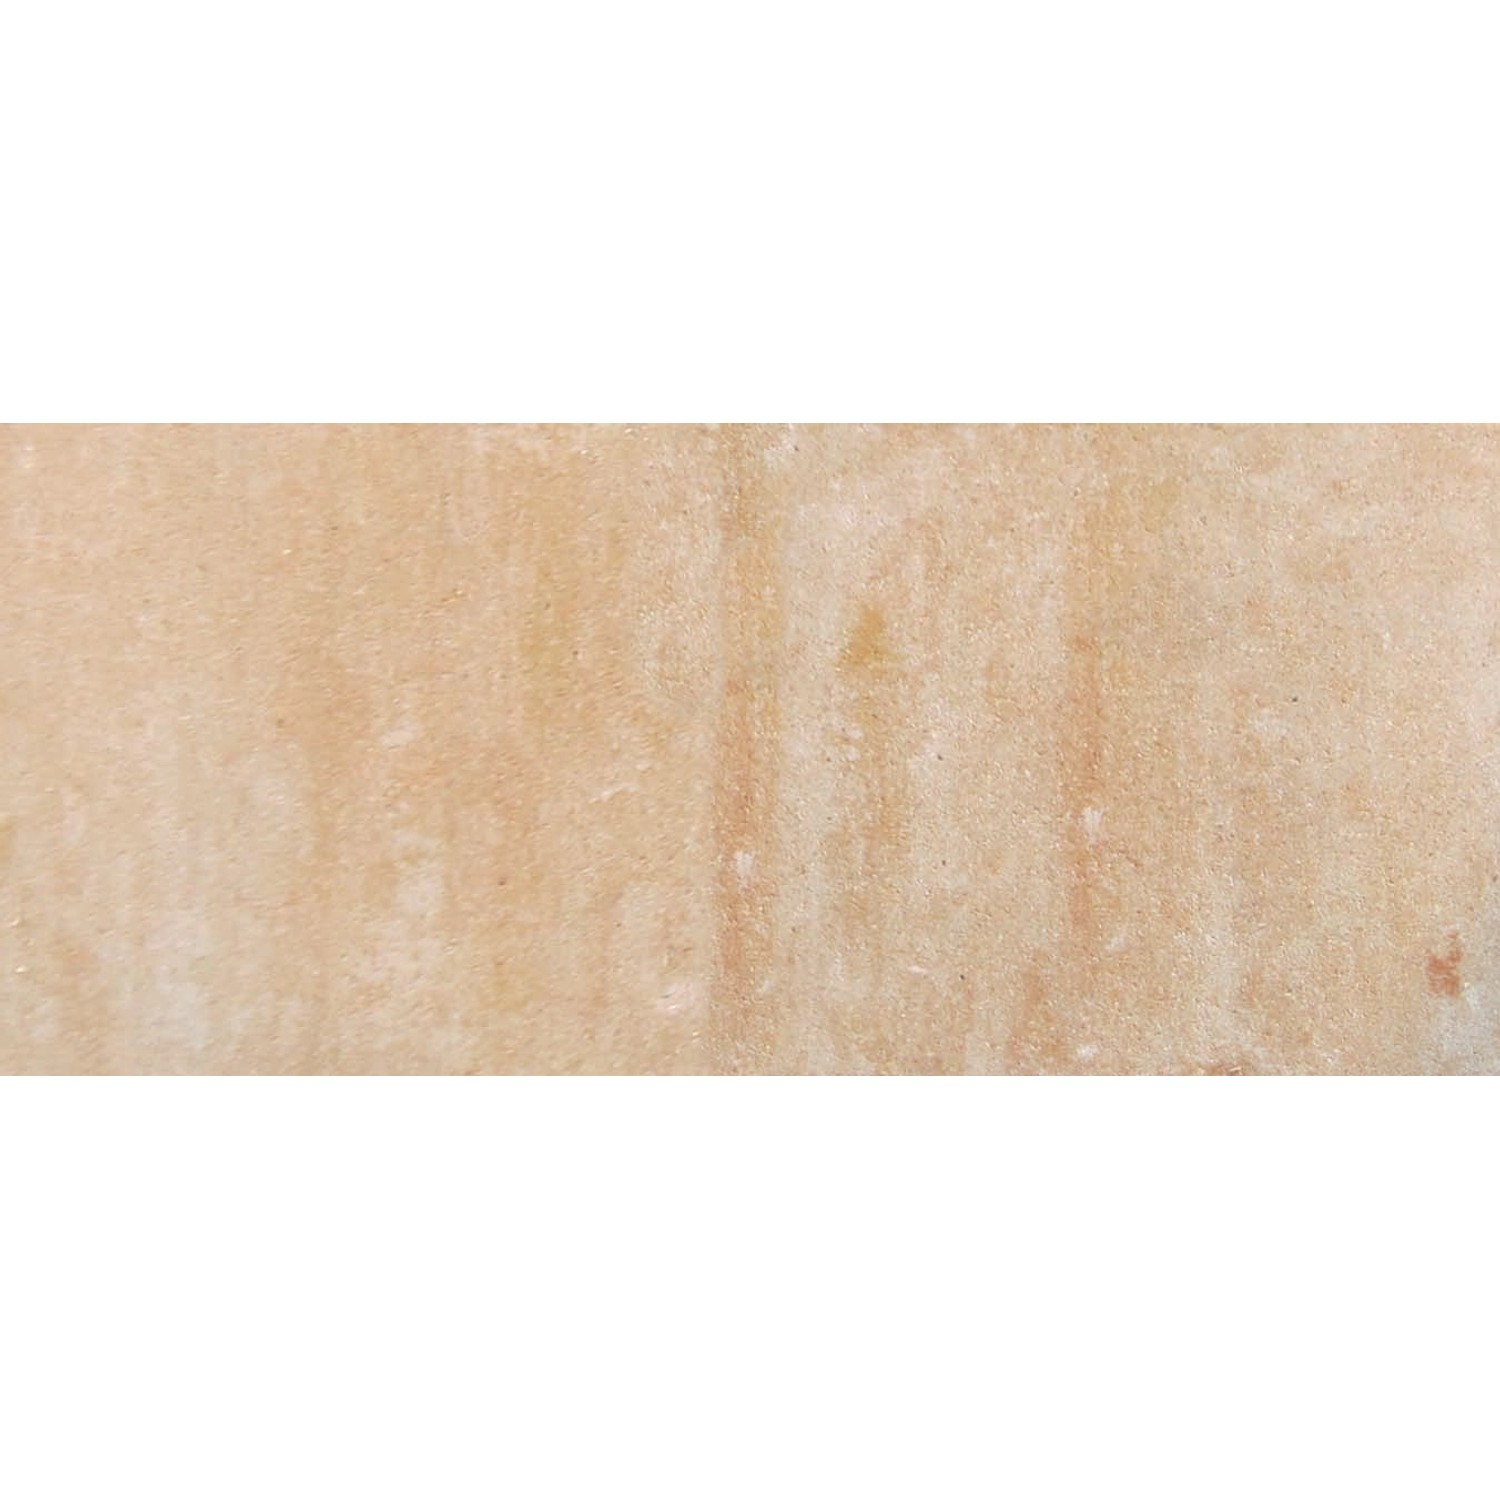 Diephaus Terrassenplatte Corso Sandstein 60 x 40 x 4 cm